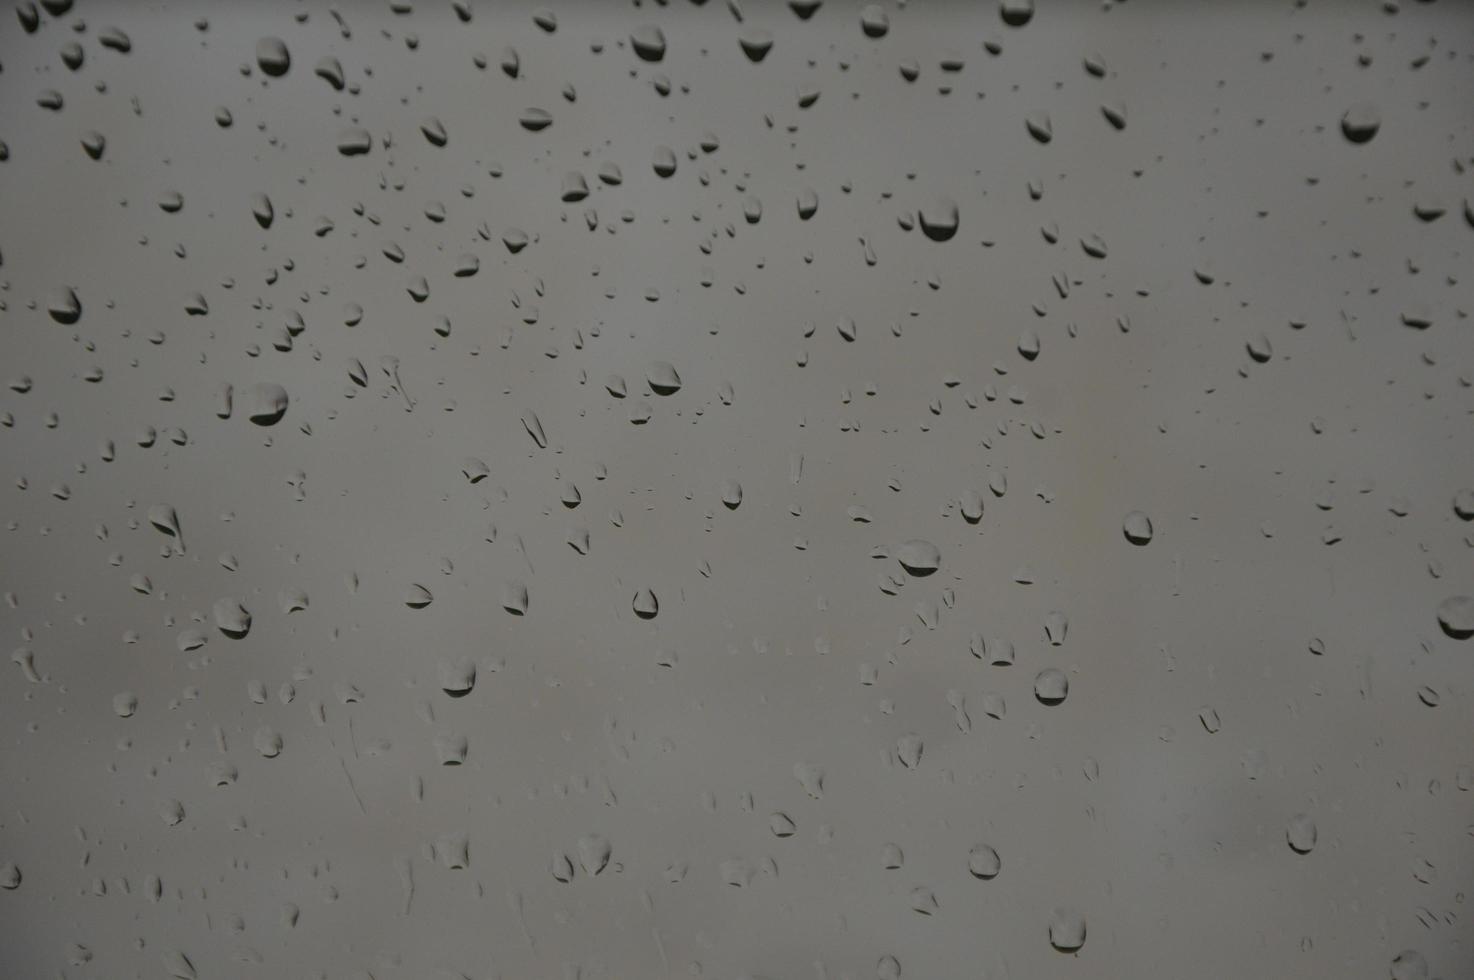 regndroppar på fönstret foto